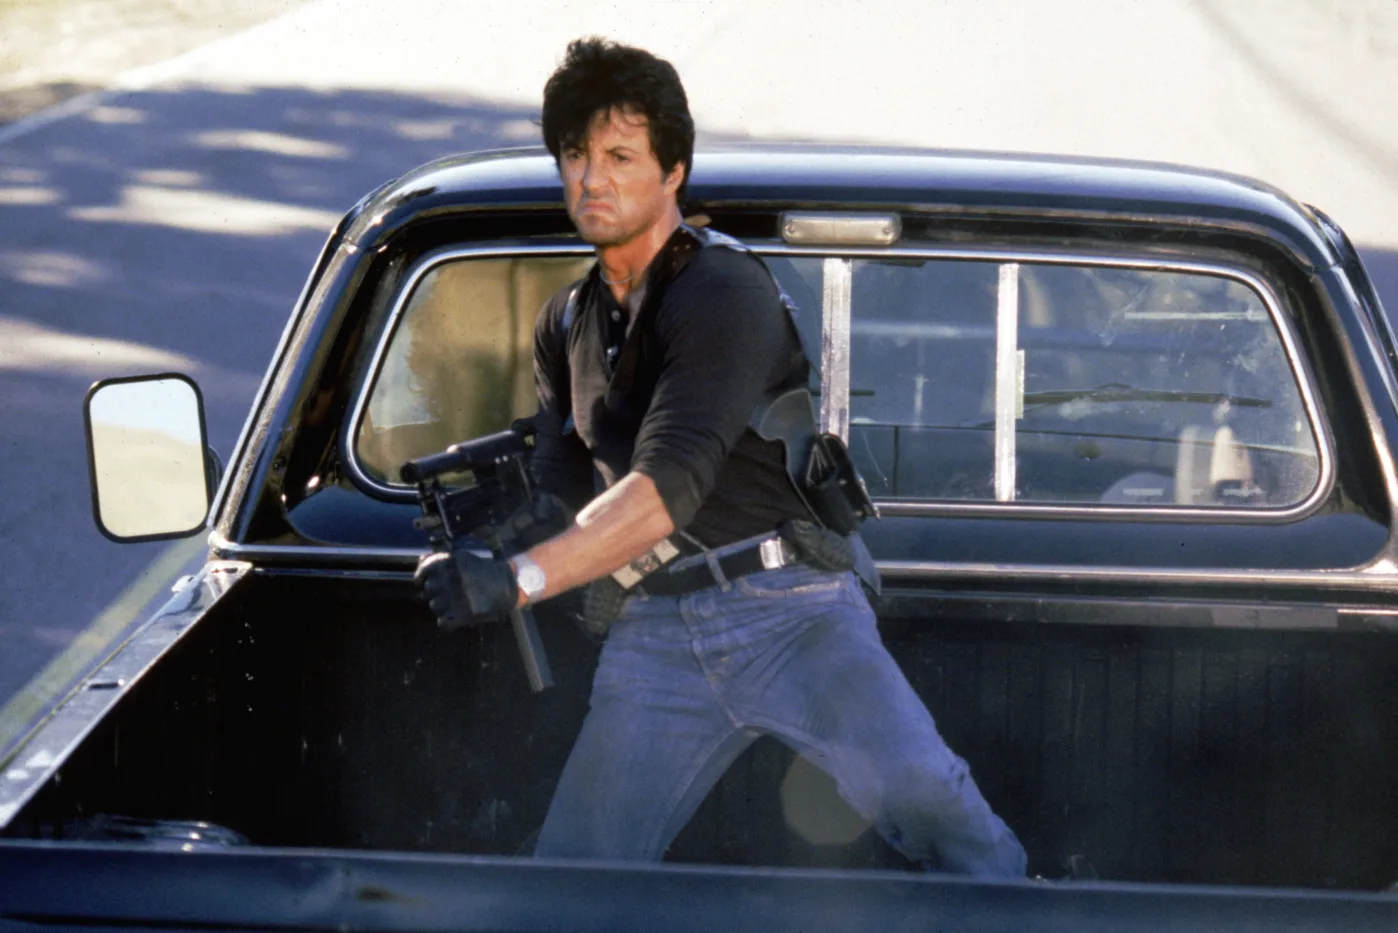 ein schwarzer Wagen mit Ladefläche fährt auf einer Straße von der Kamera weg, auf der Ladefläche steht Sylvester Stallone mit einem Maschinengewehr bewaffnet und schießt auf Verfolger außerhalb des Bildes